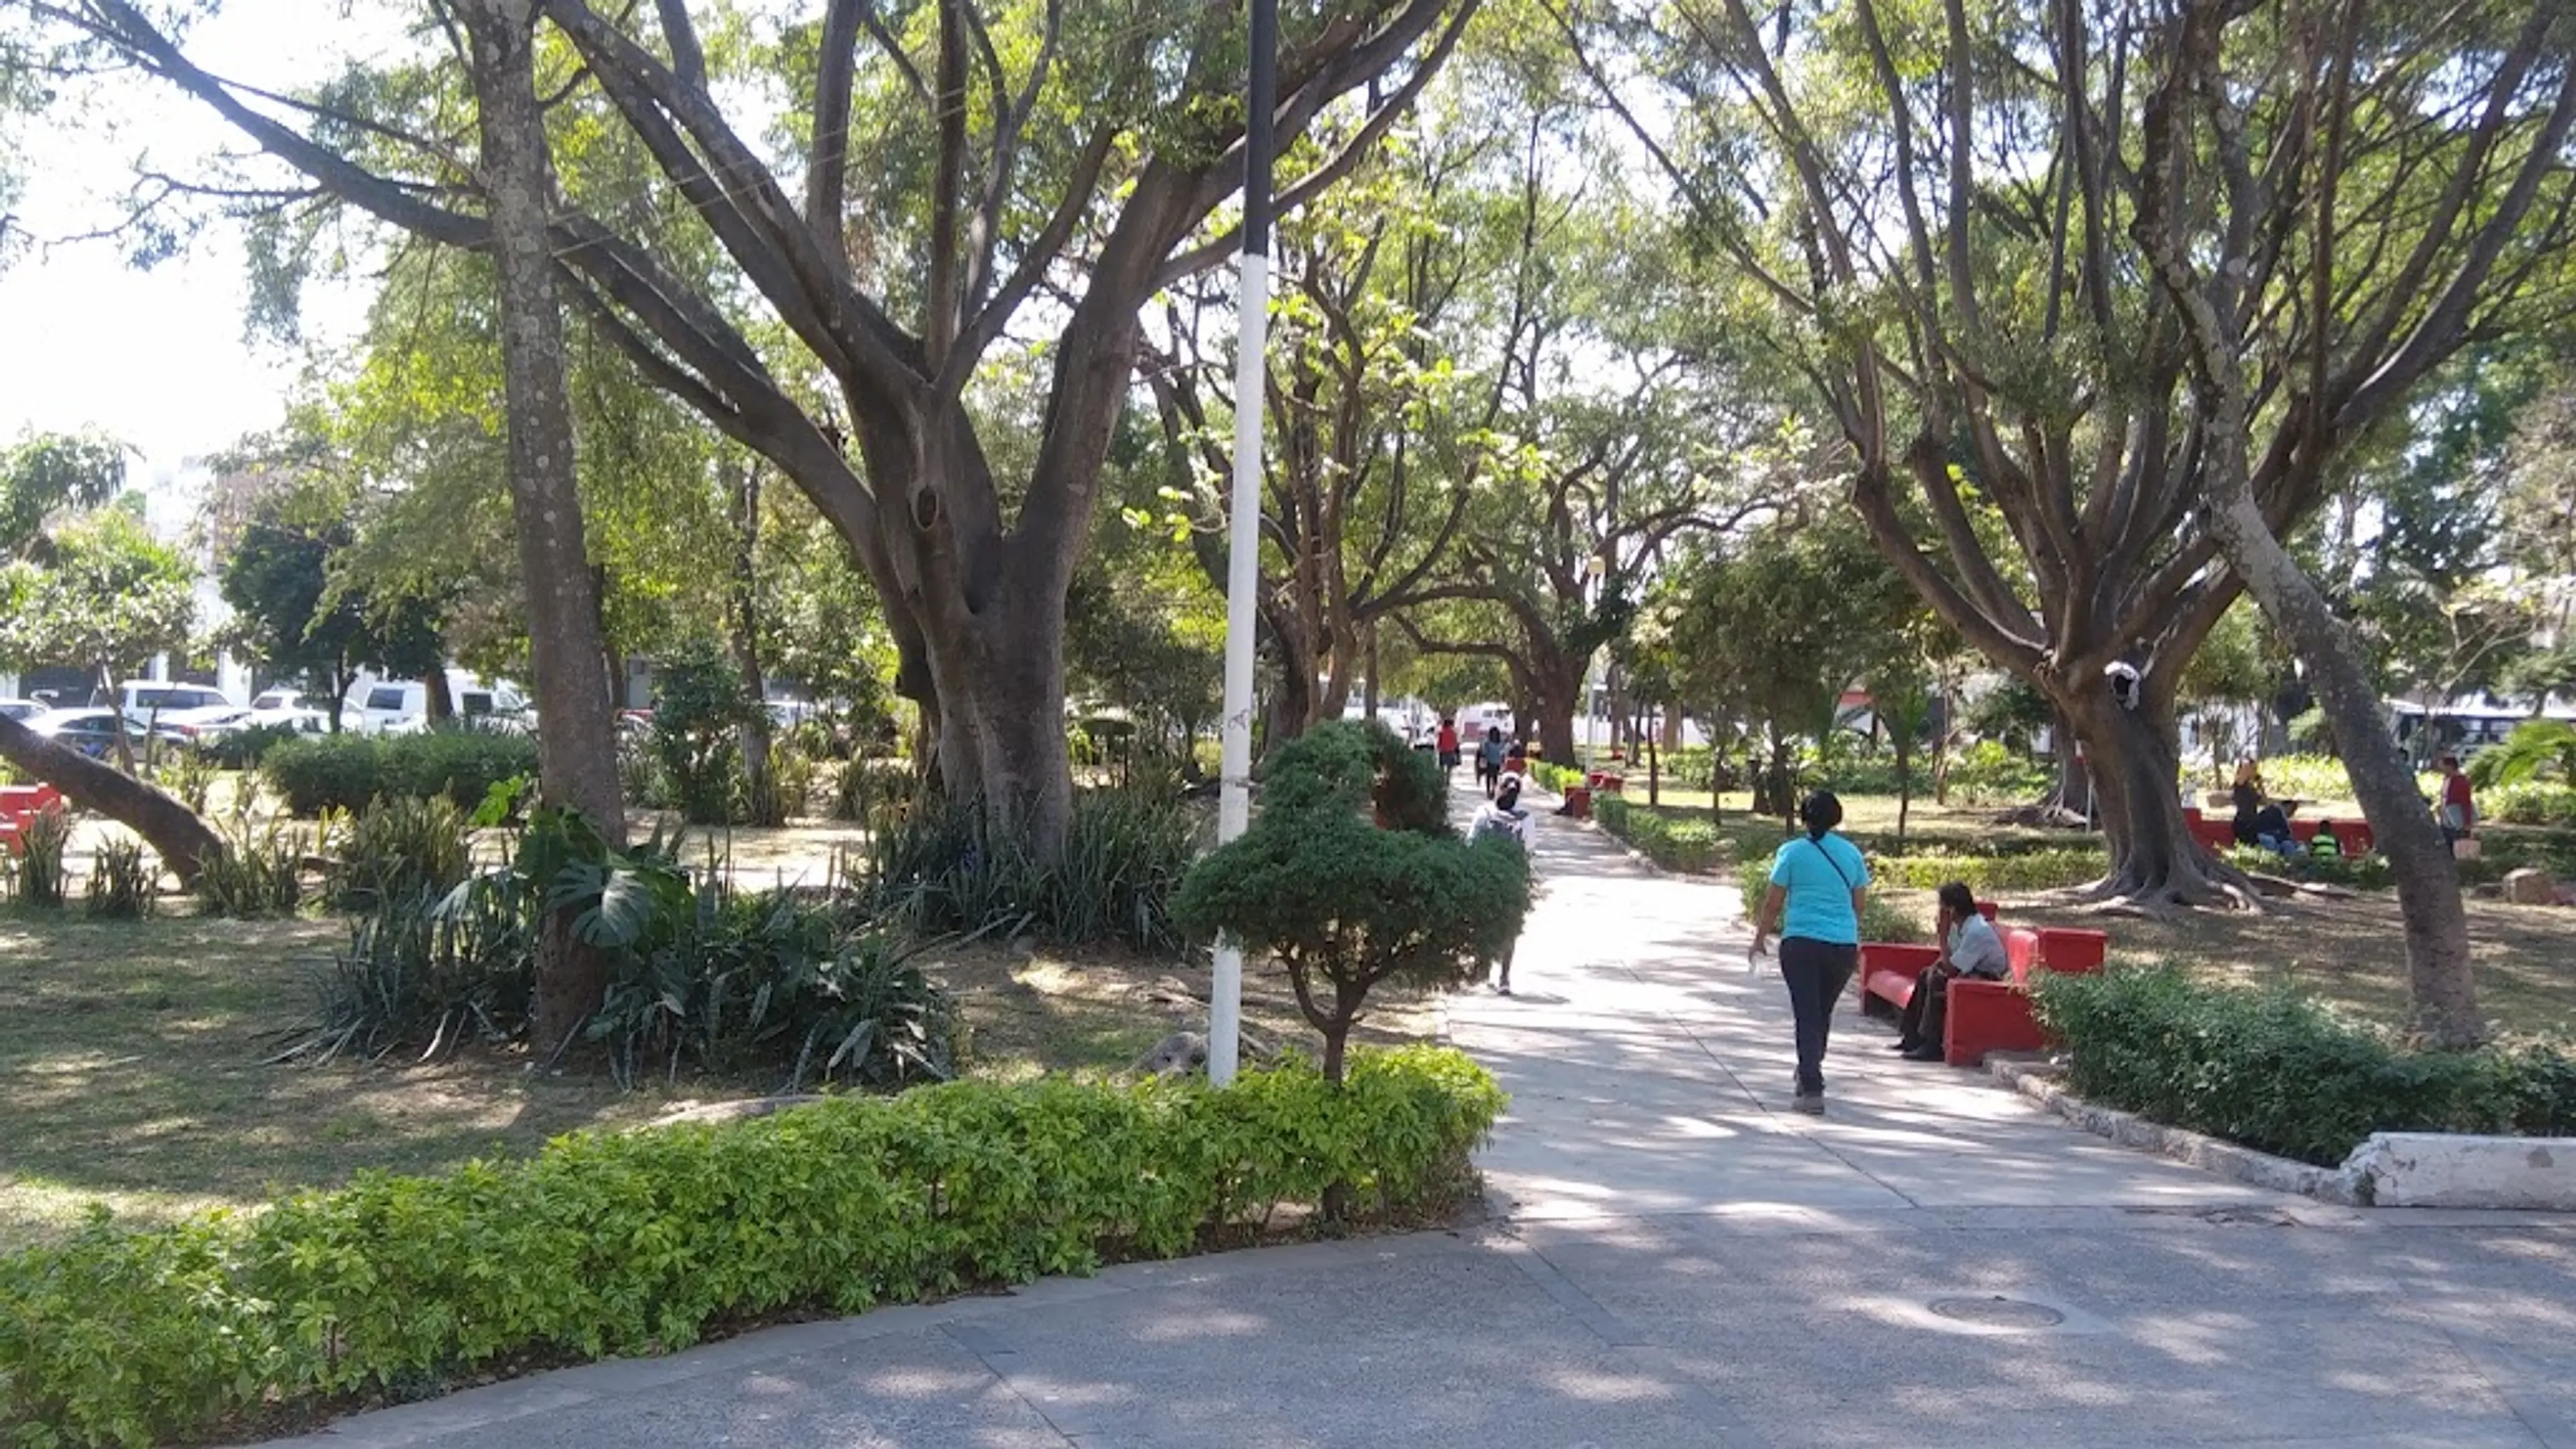 Guadalajara's Botanical Garden